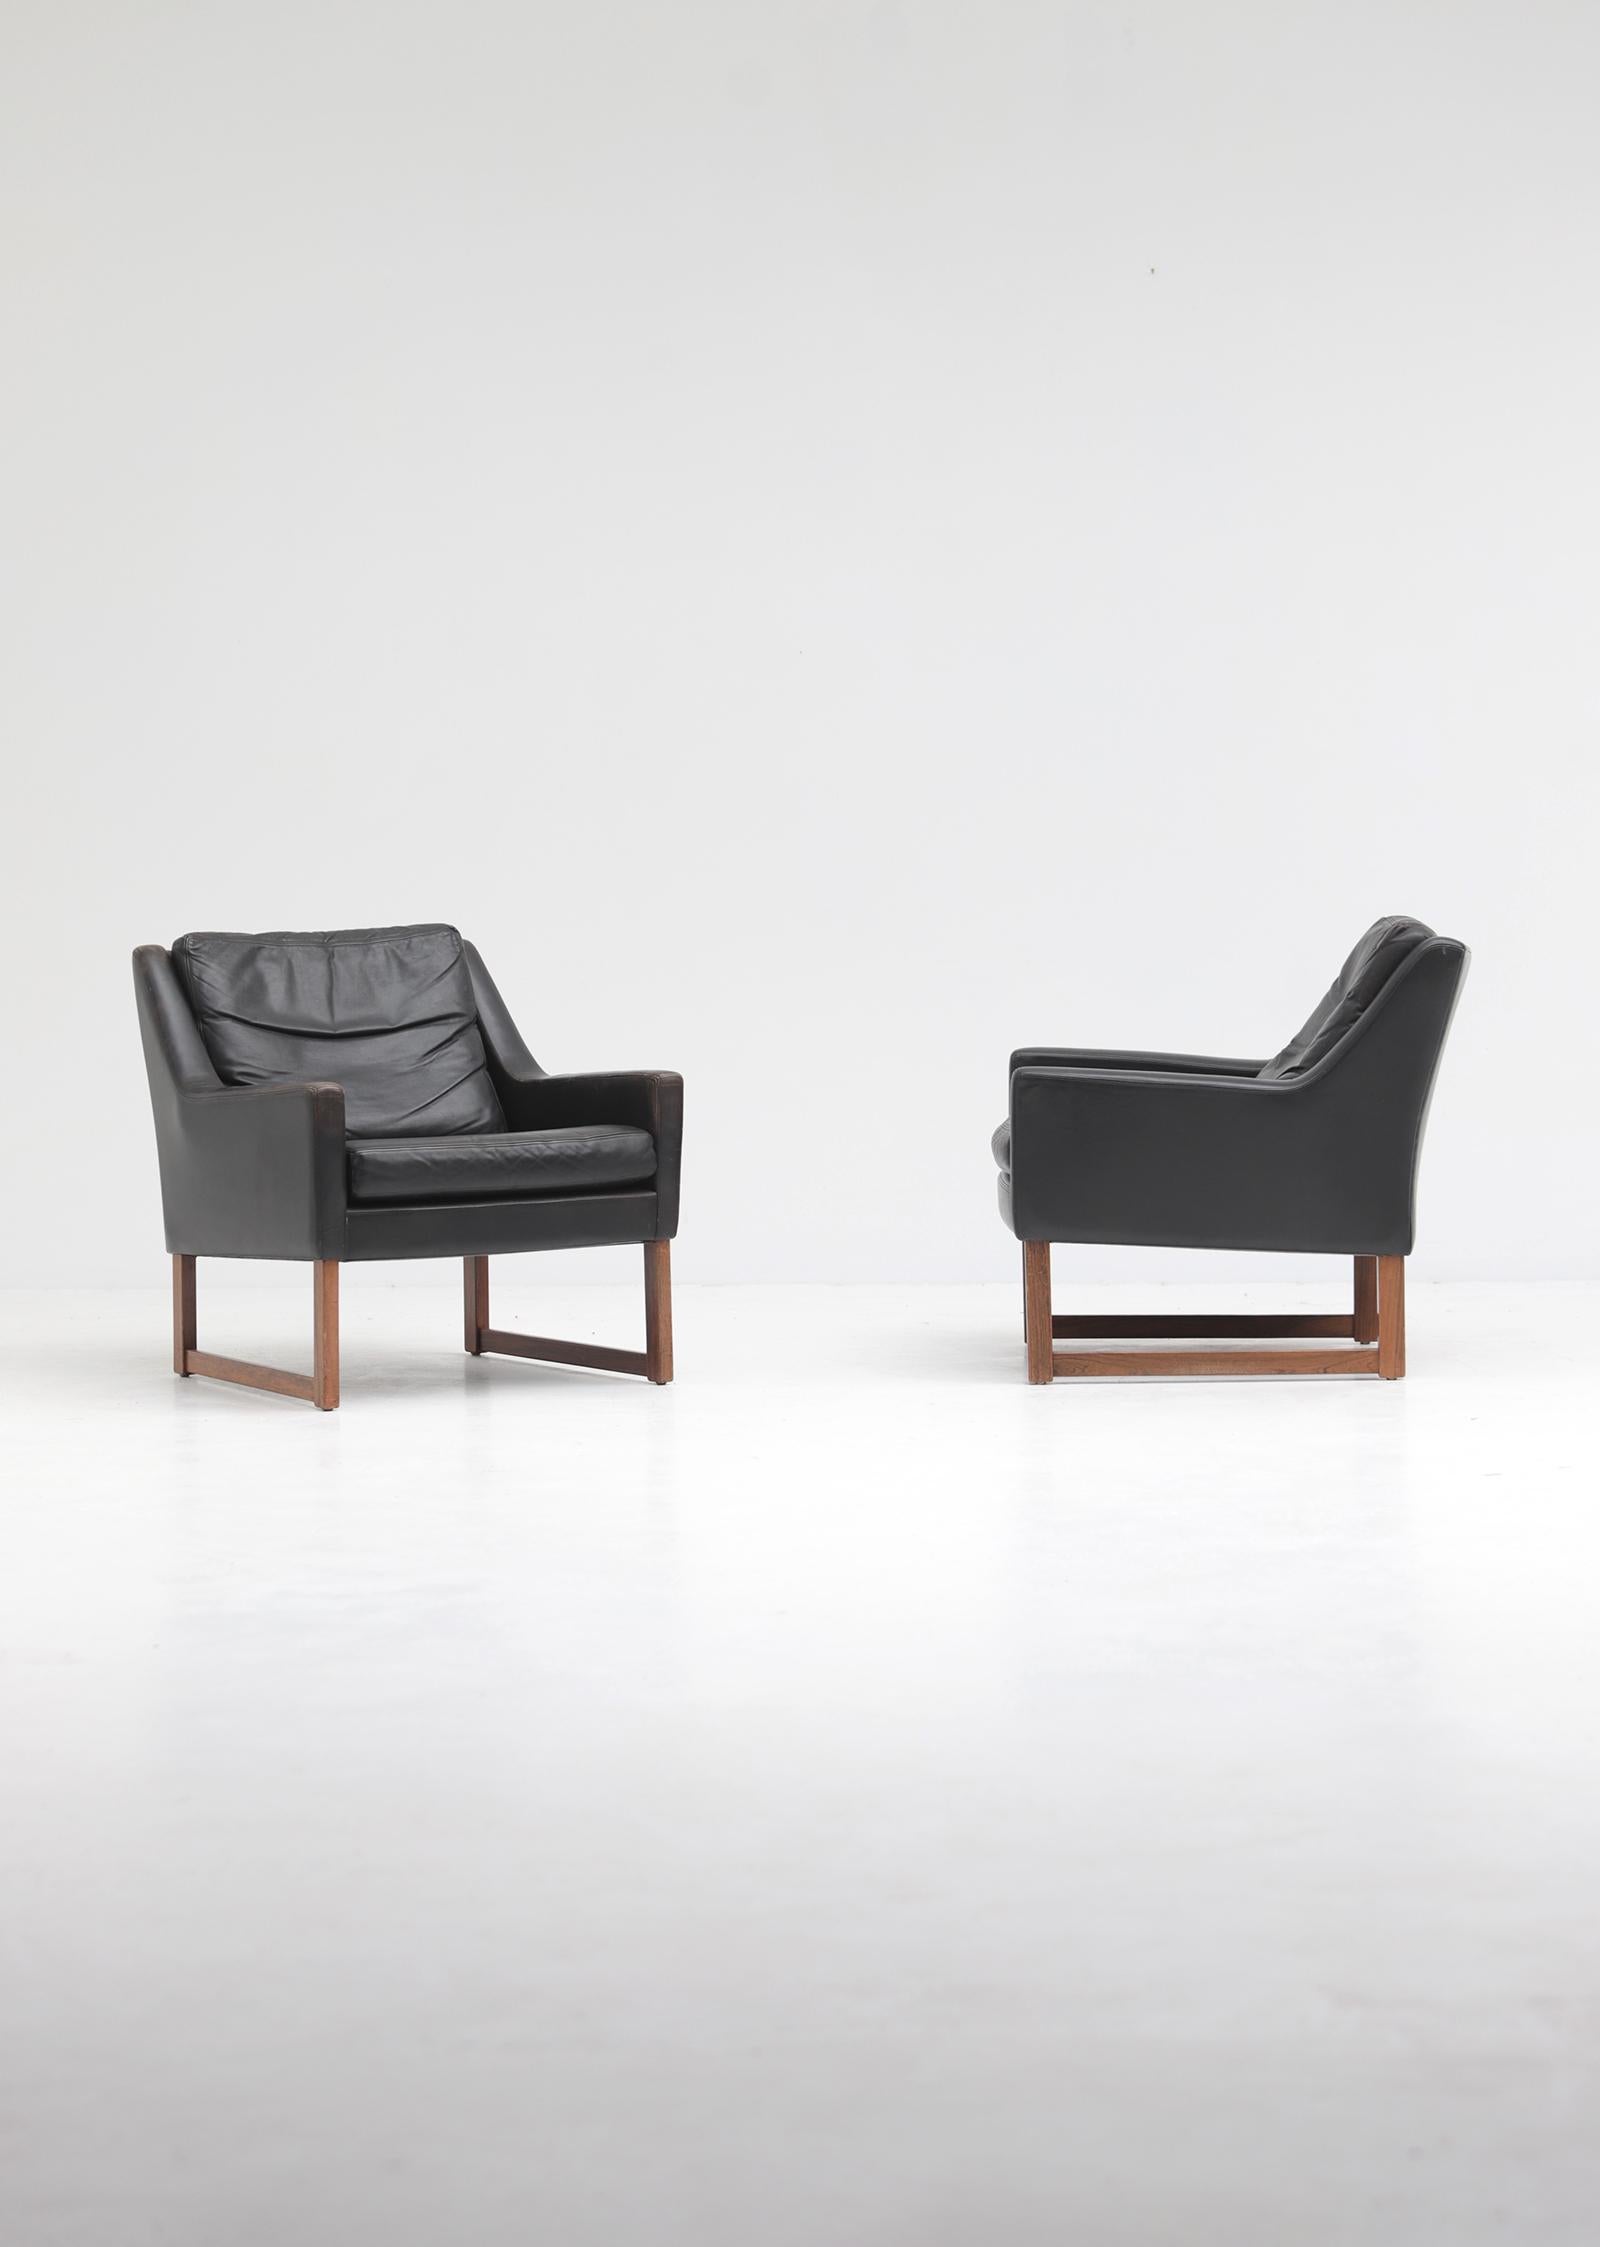 Paire de fauteuils en cuir conçus dans les années 1960 par Rudolf Bernd Glatzel pour Kill International, Allemagne. Les deux chaises ont un cadre en bois, recouvert d'un cuir noir aniline de qualité. Les fauteuils sont équipés de coussins non fixés,